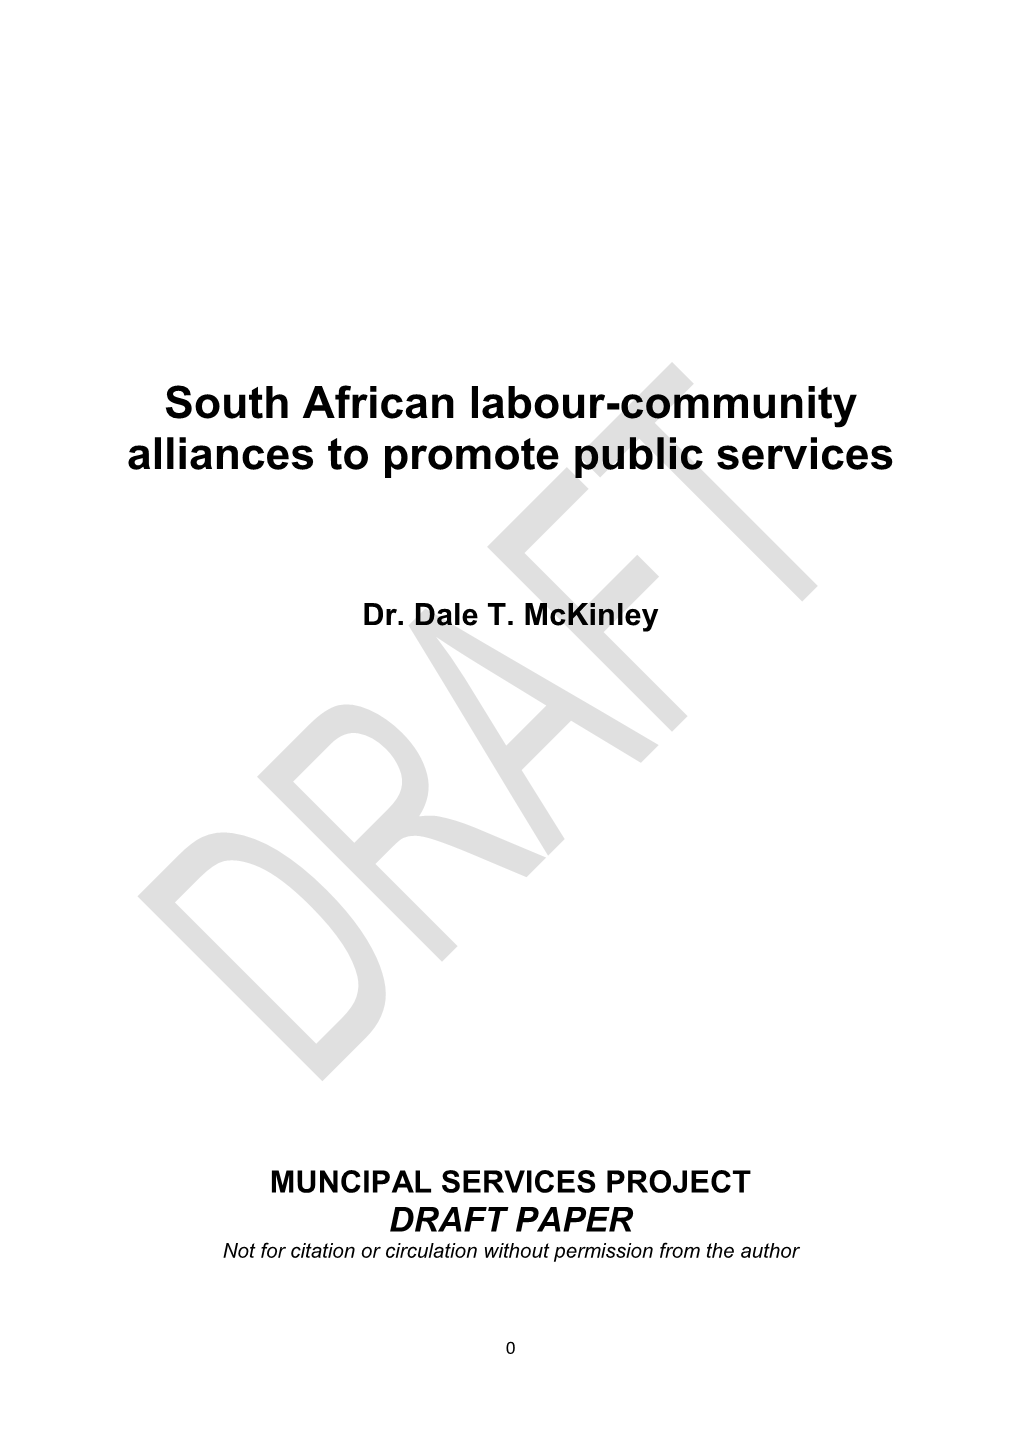 South African Labour-Community Alliances to Promote Public Services